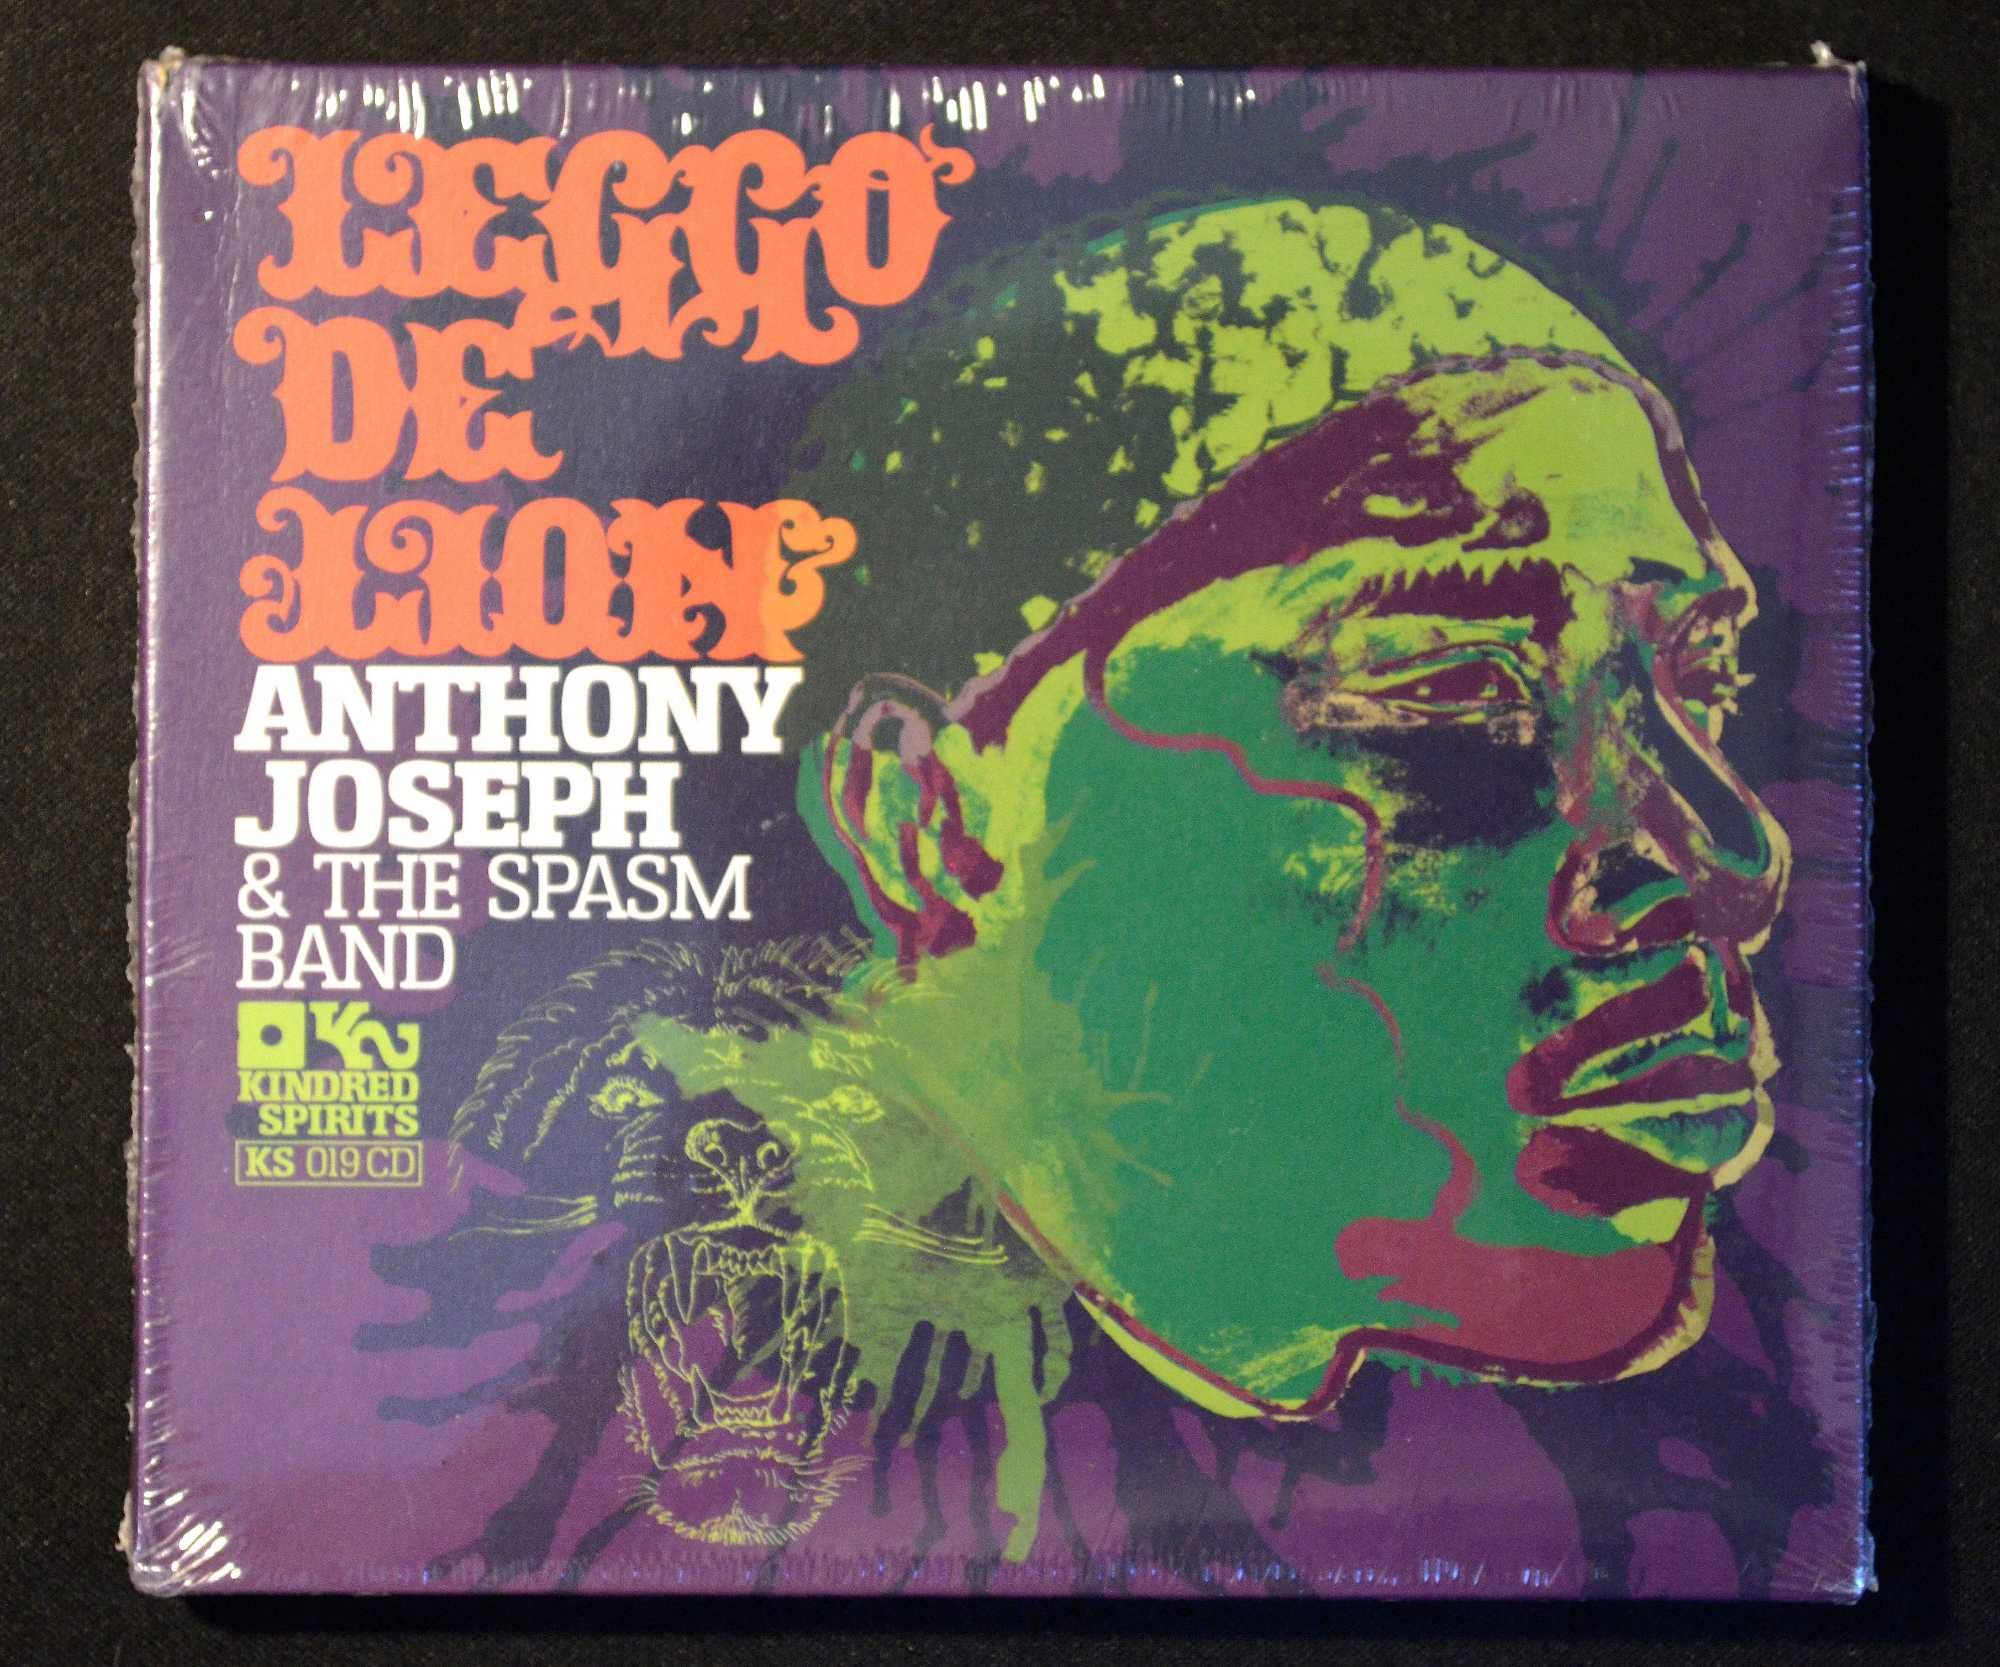 Anthony Joseph & The Spasm Band – Leggo De Lion (CD)